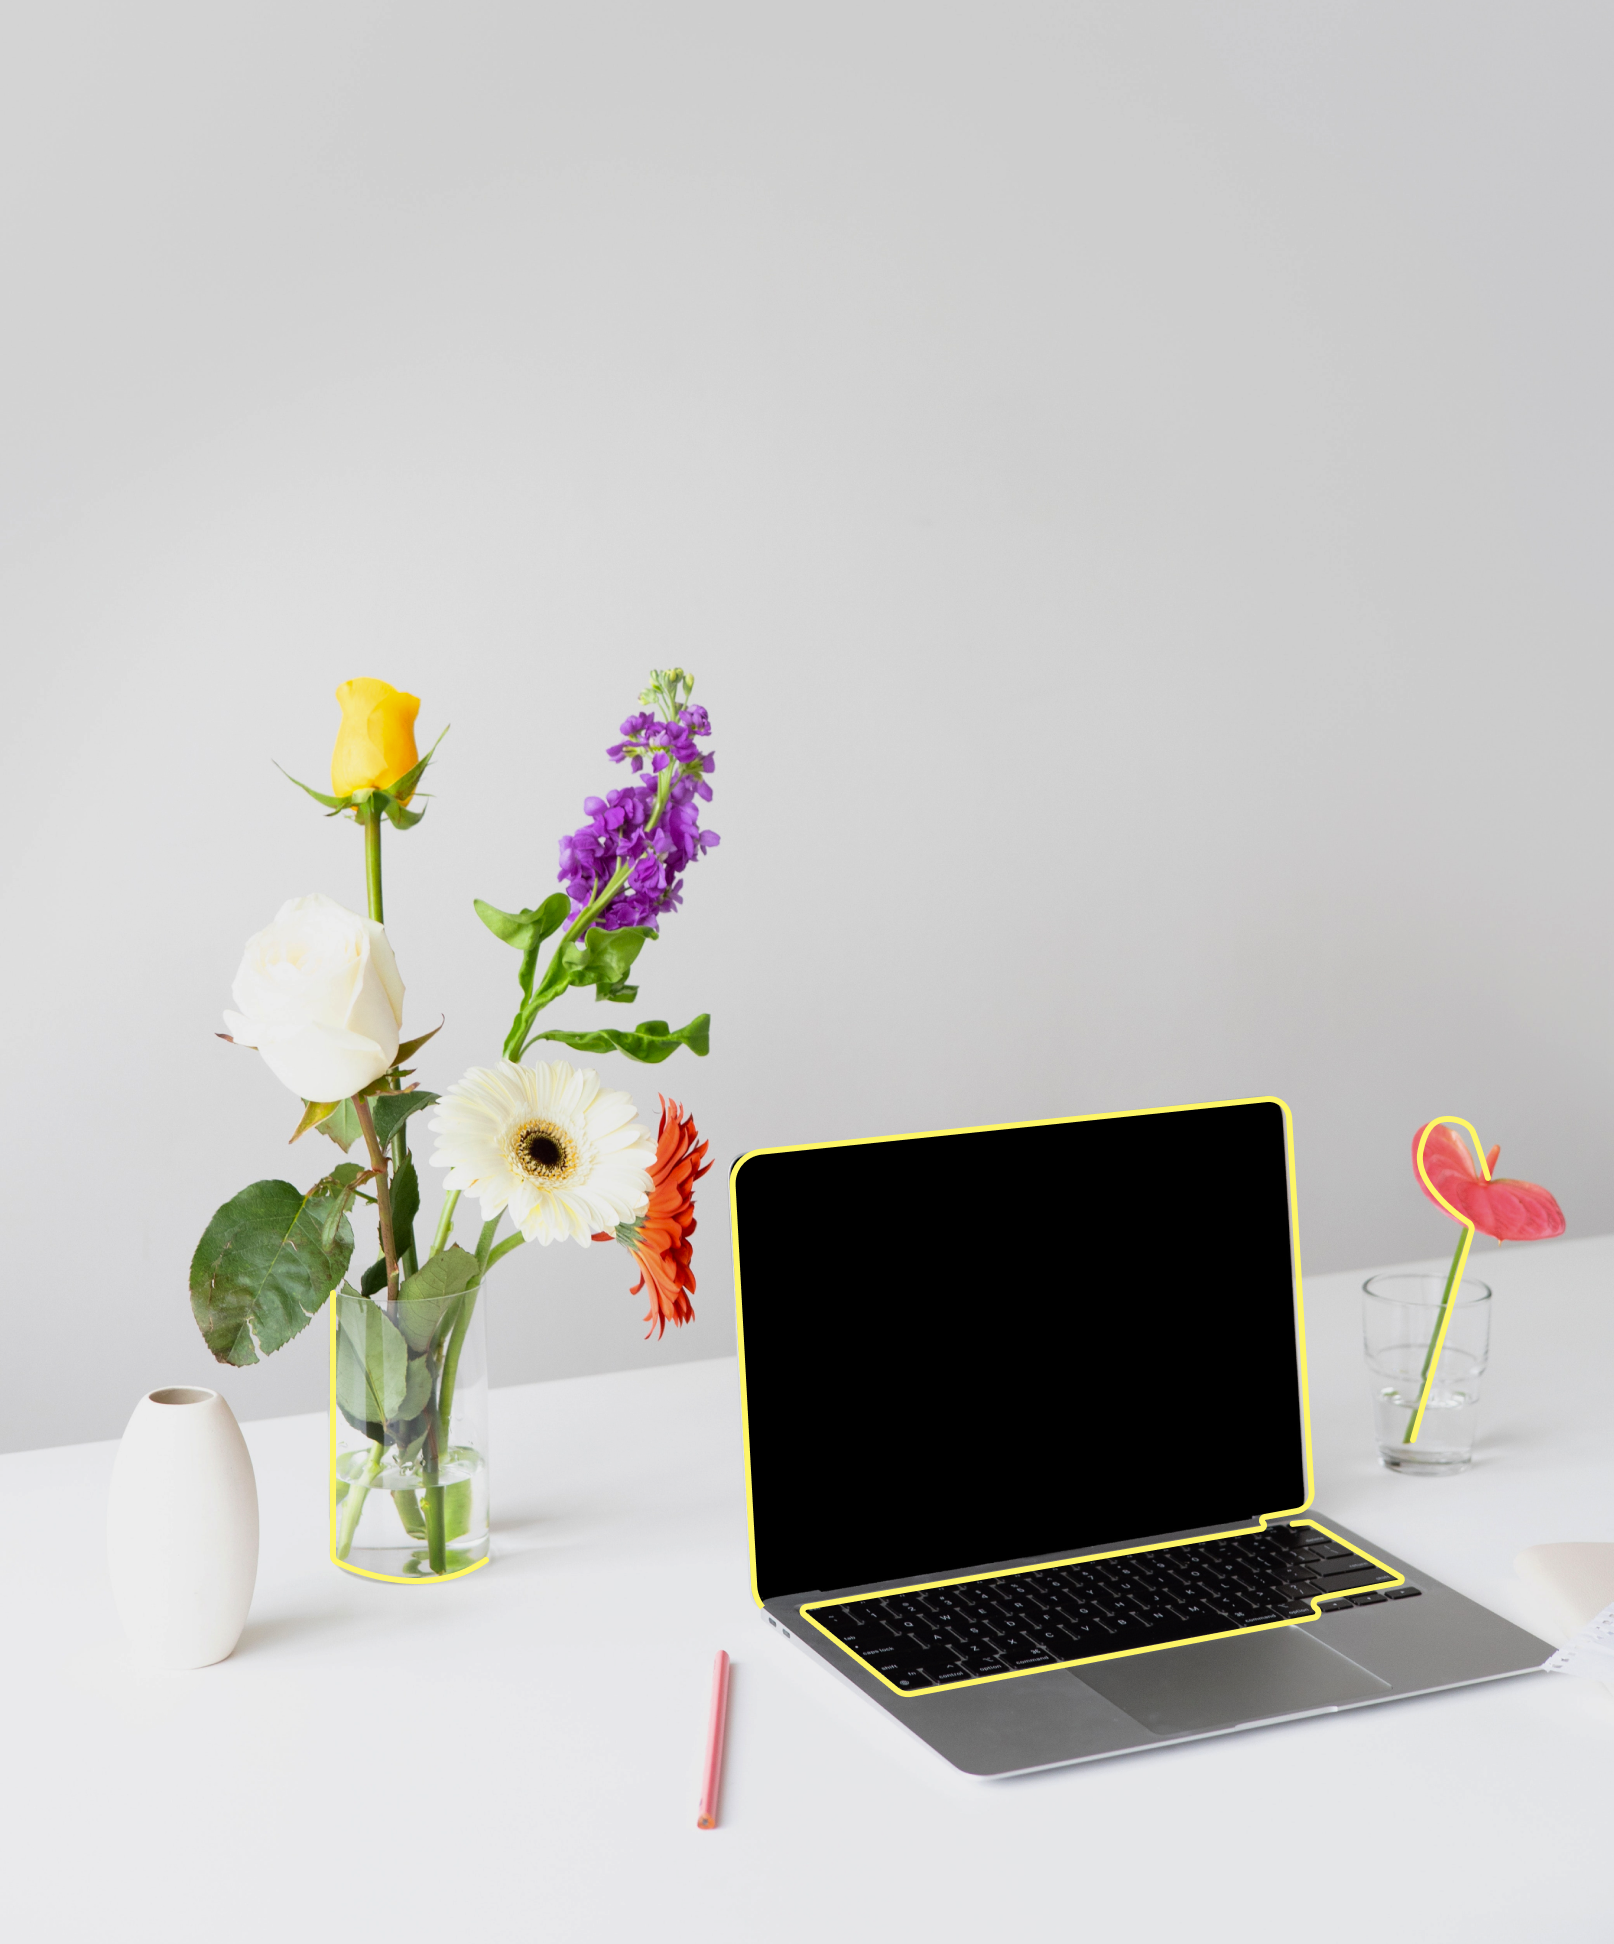 Ein Laptop steht auf einem weißen Tisch in Umgebung von bunten Blumen